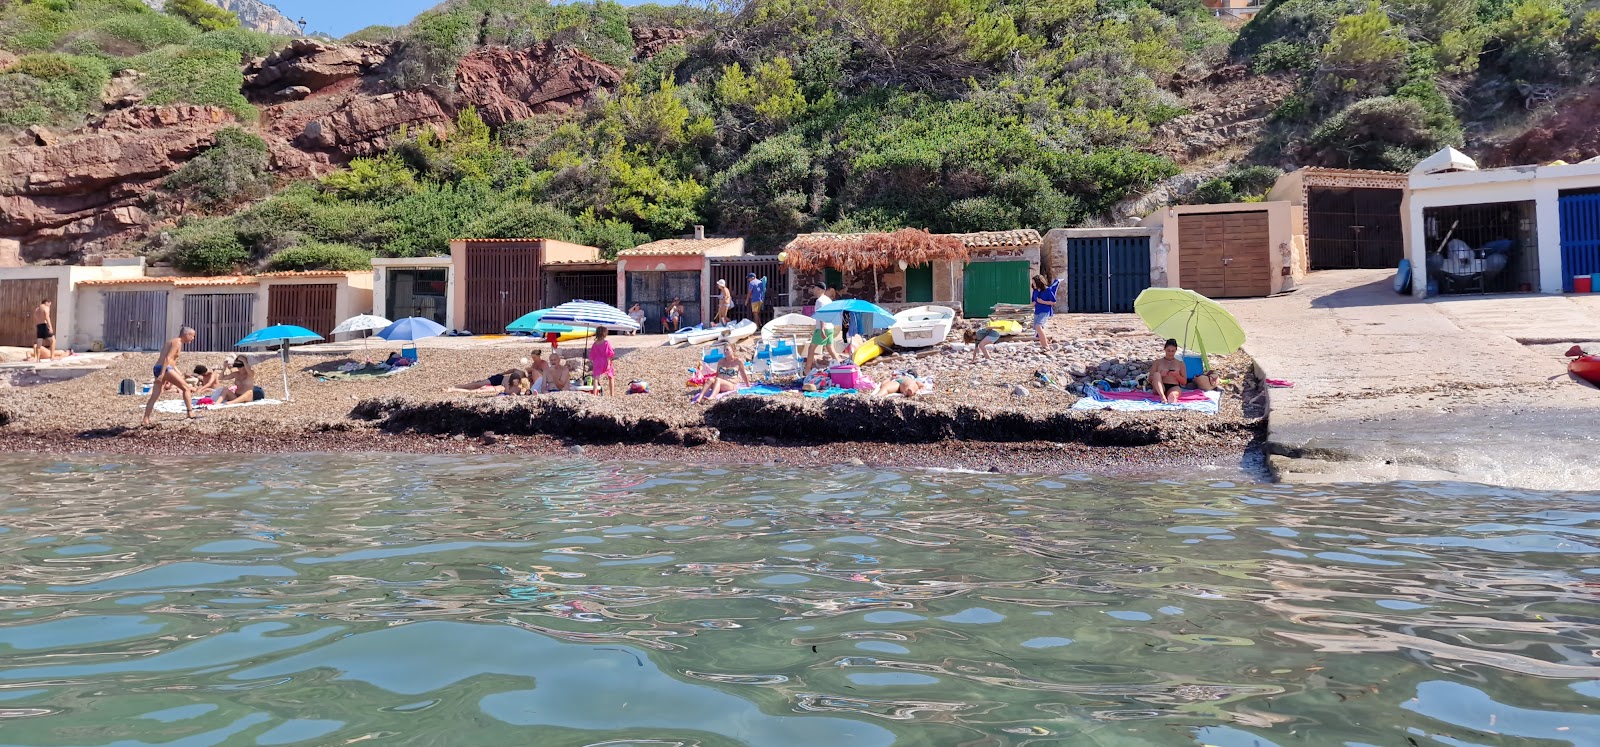 Foto di Playa Puerto des Canonge con molto pulito livello di pulizia